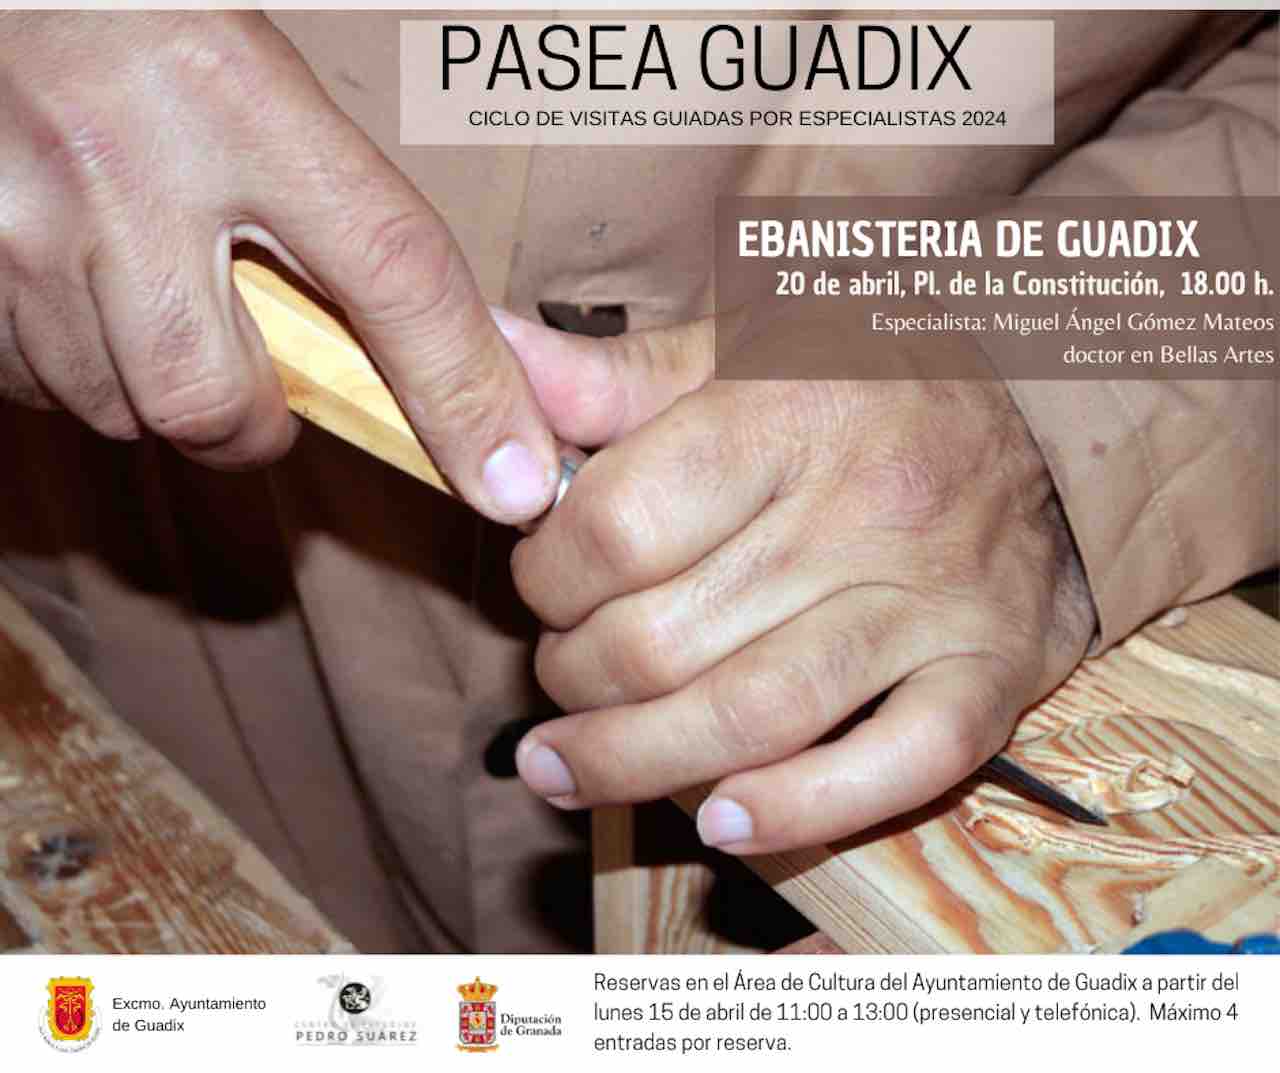 Pasea Guadix estará dedicada a los oficios tradicionales